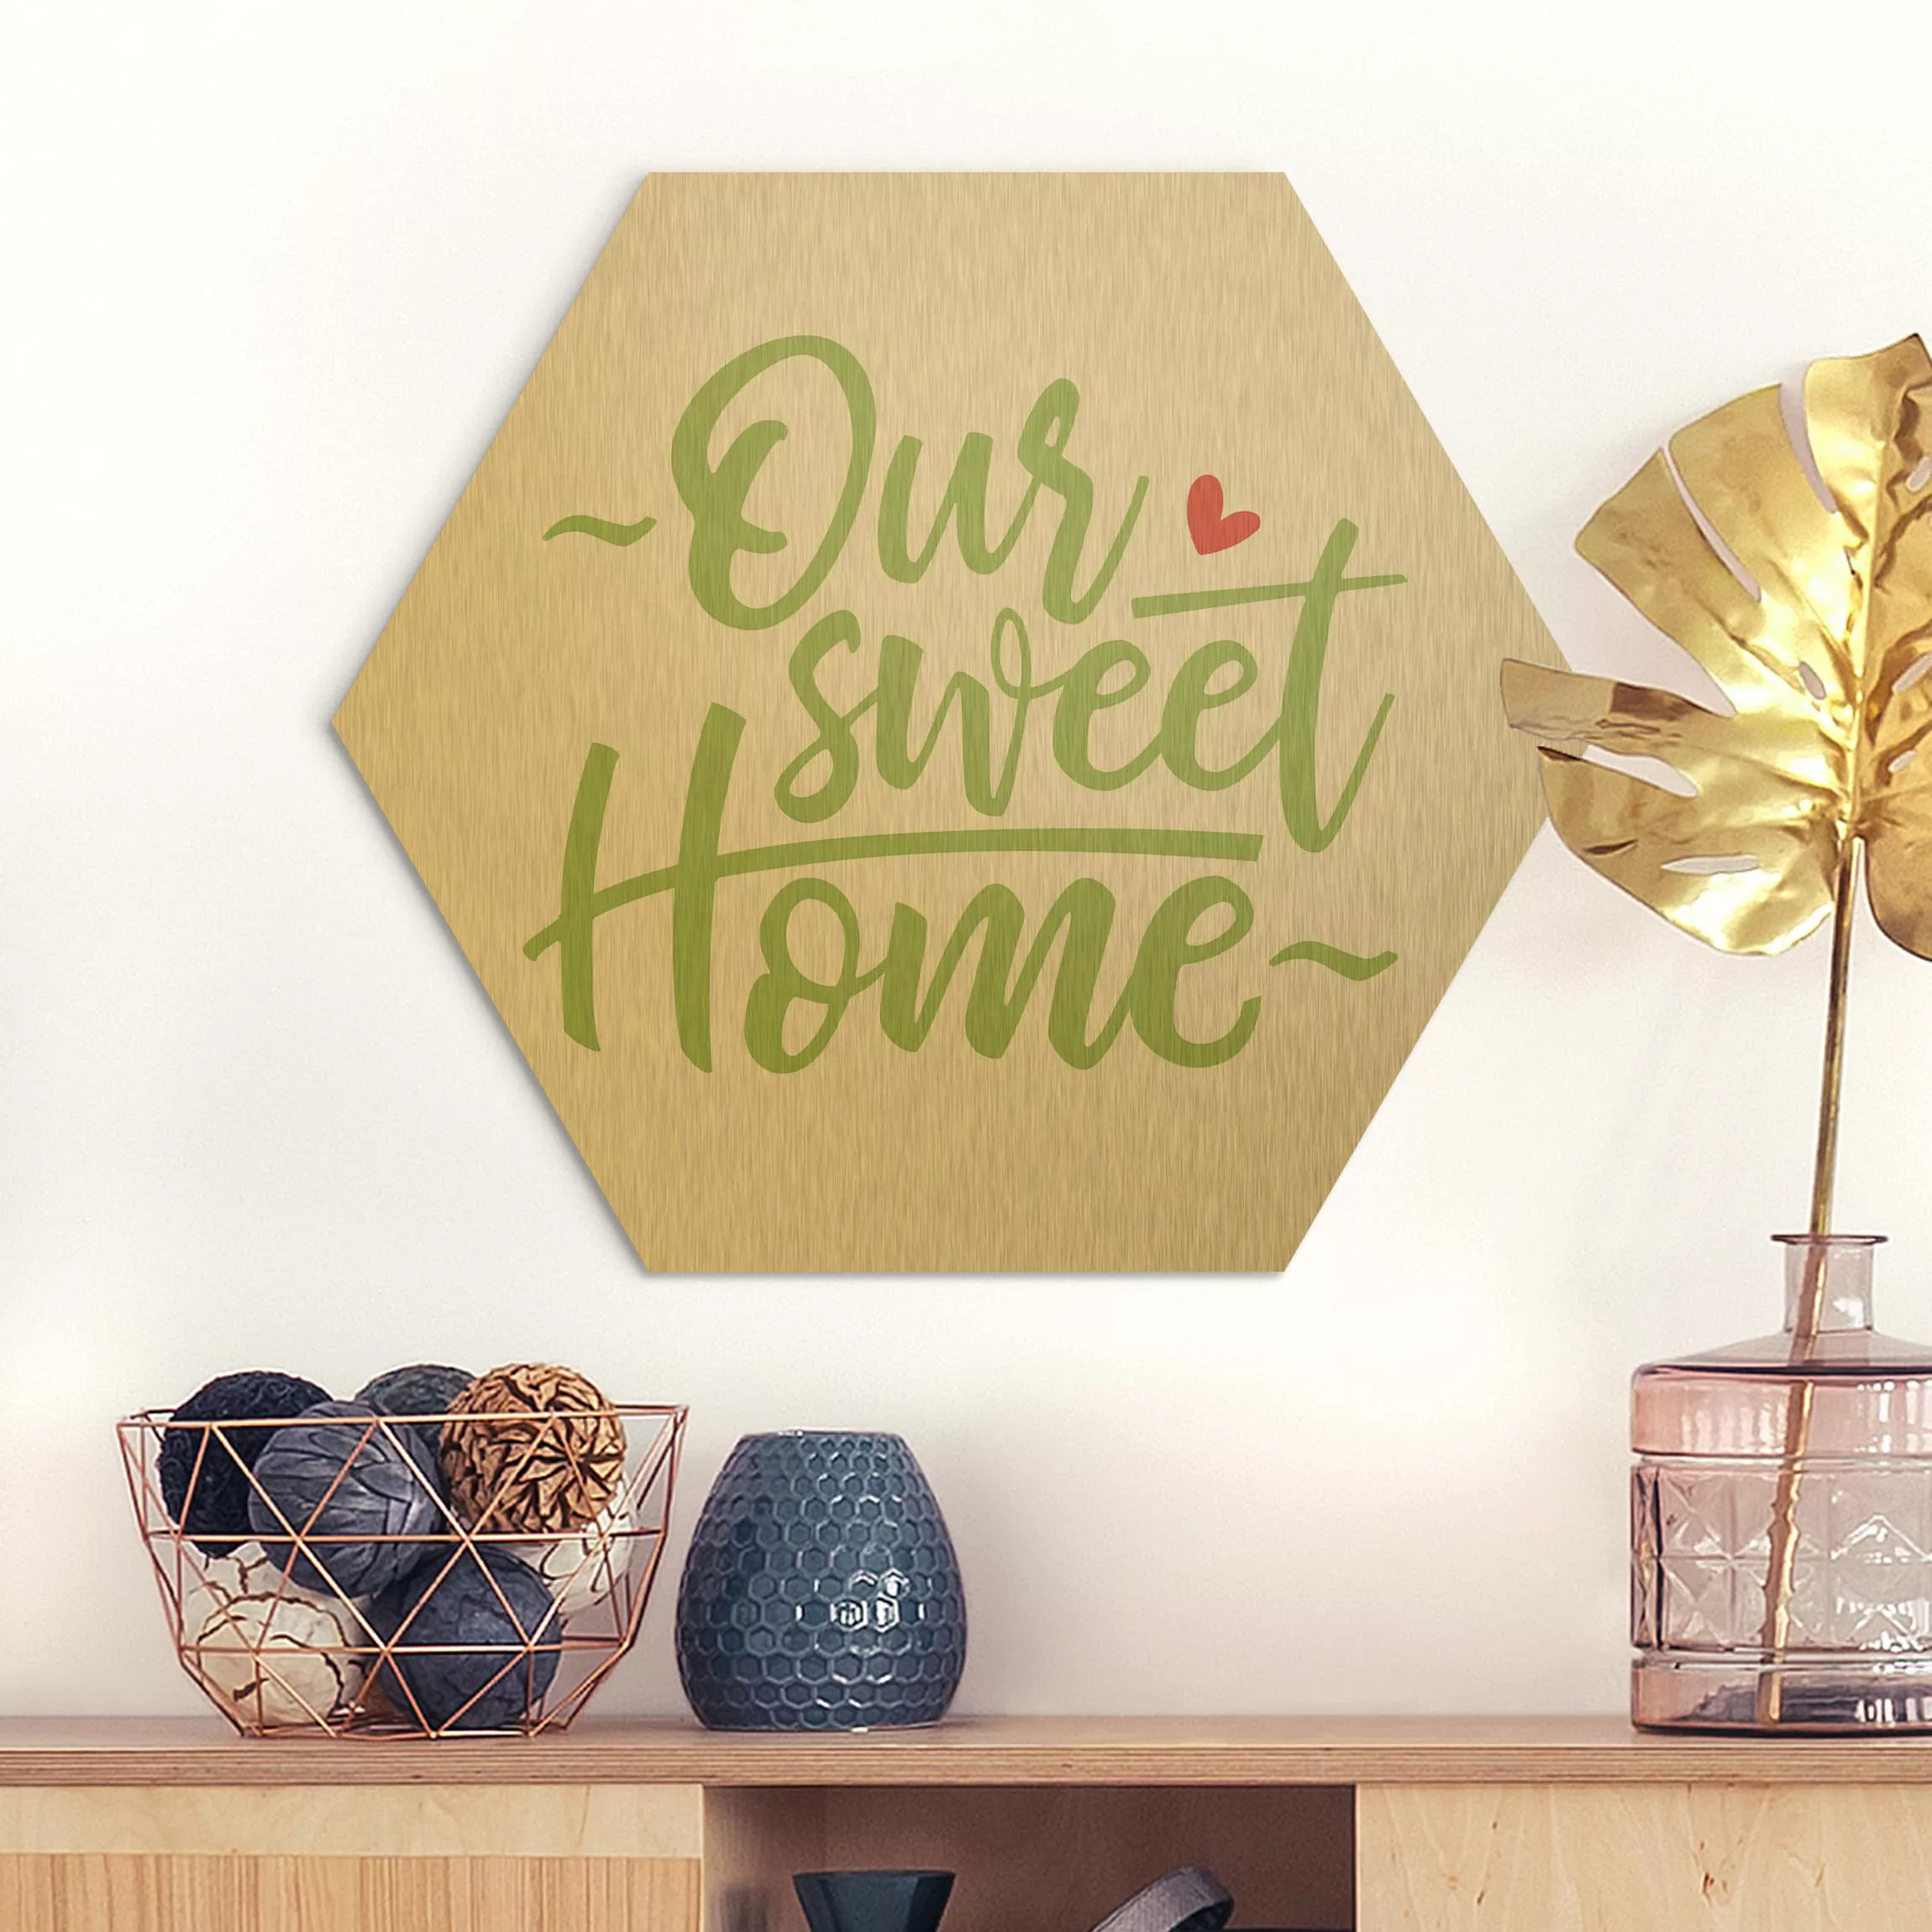 Hexagon-Alu-Dibond Bild Spruch Our sweet home günstig online kaufen